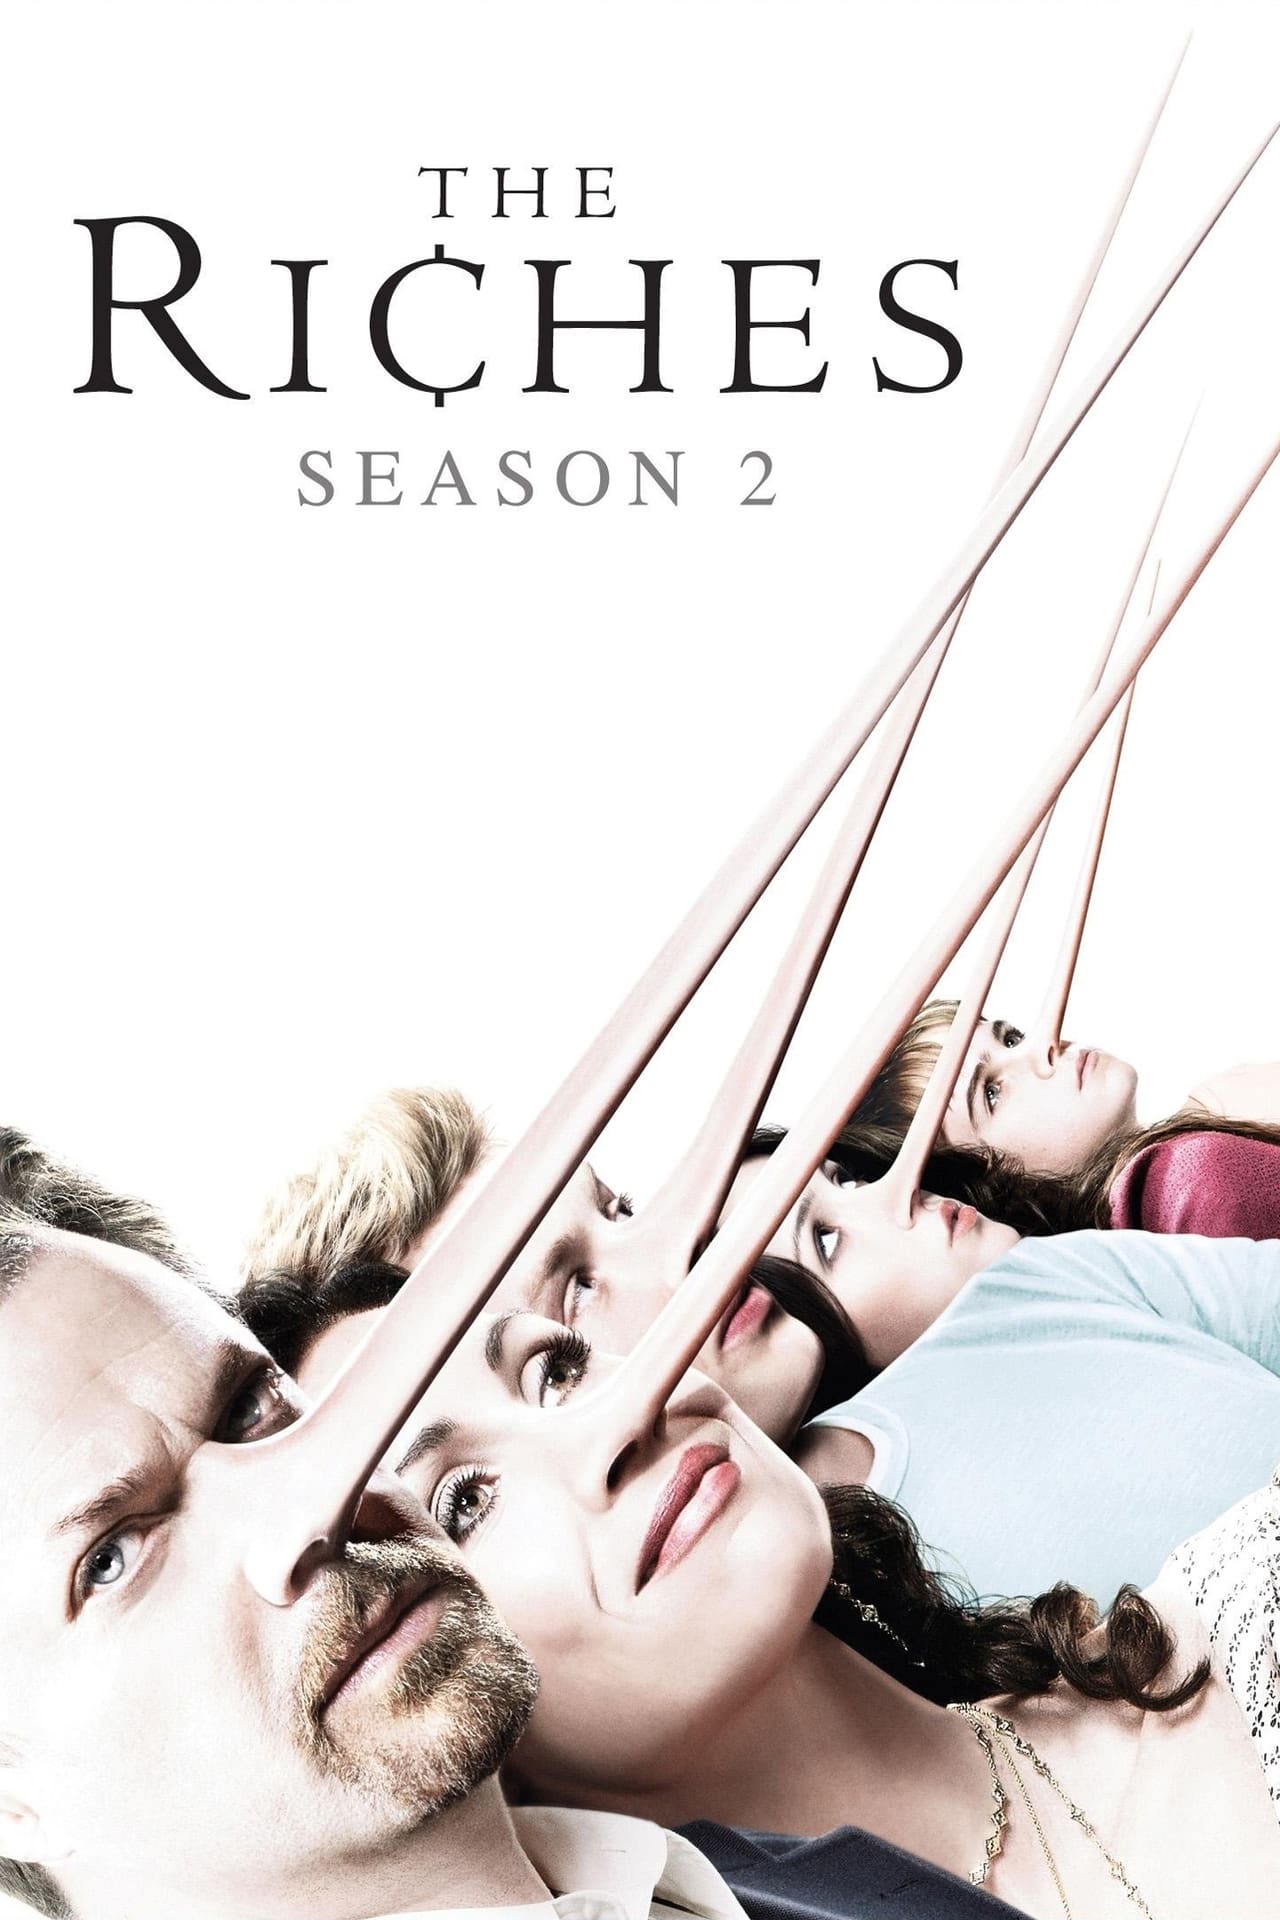 The Riches Season 2